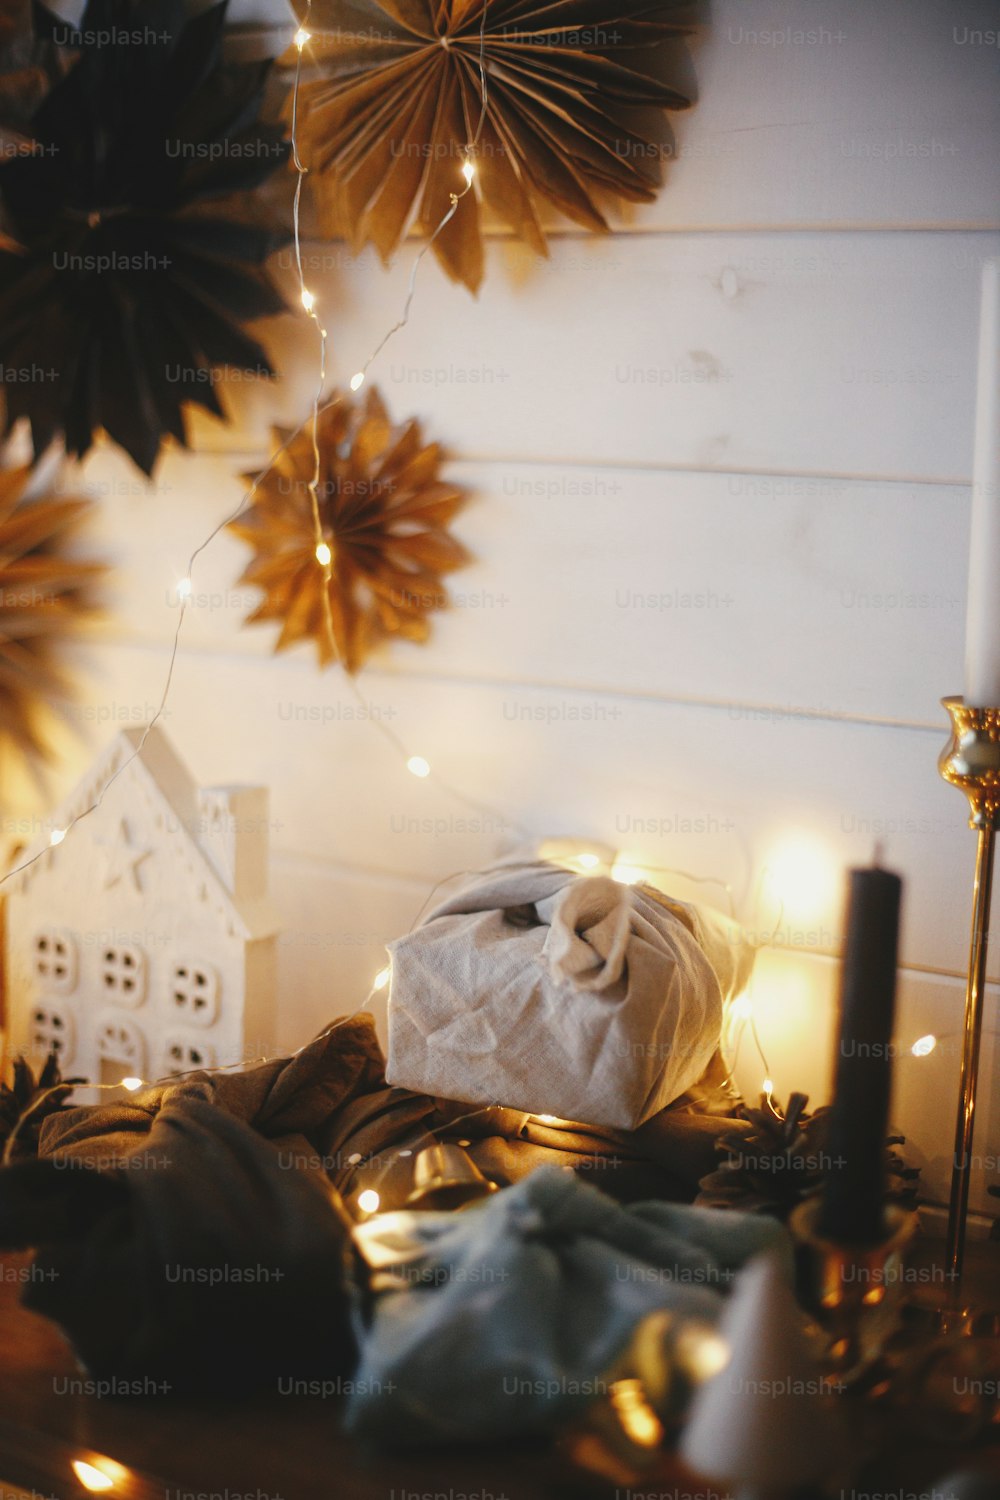 Joyeux Noël! Cadeaux de Noël élégants sans plastique sur une étagère en bois sur fond de petite maison, d’arbres, d’étoiles en papier et de lumières dorées de Noël bokeh. Salle scandinave festive atmosphérique